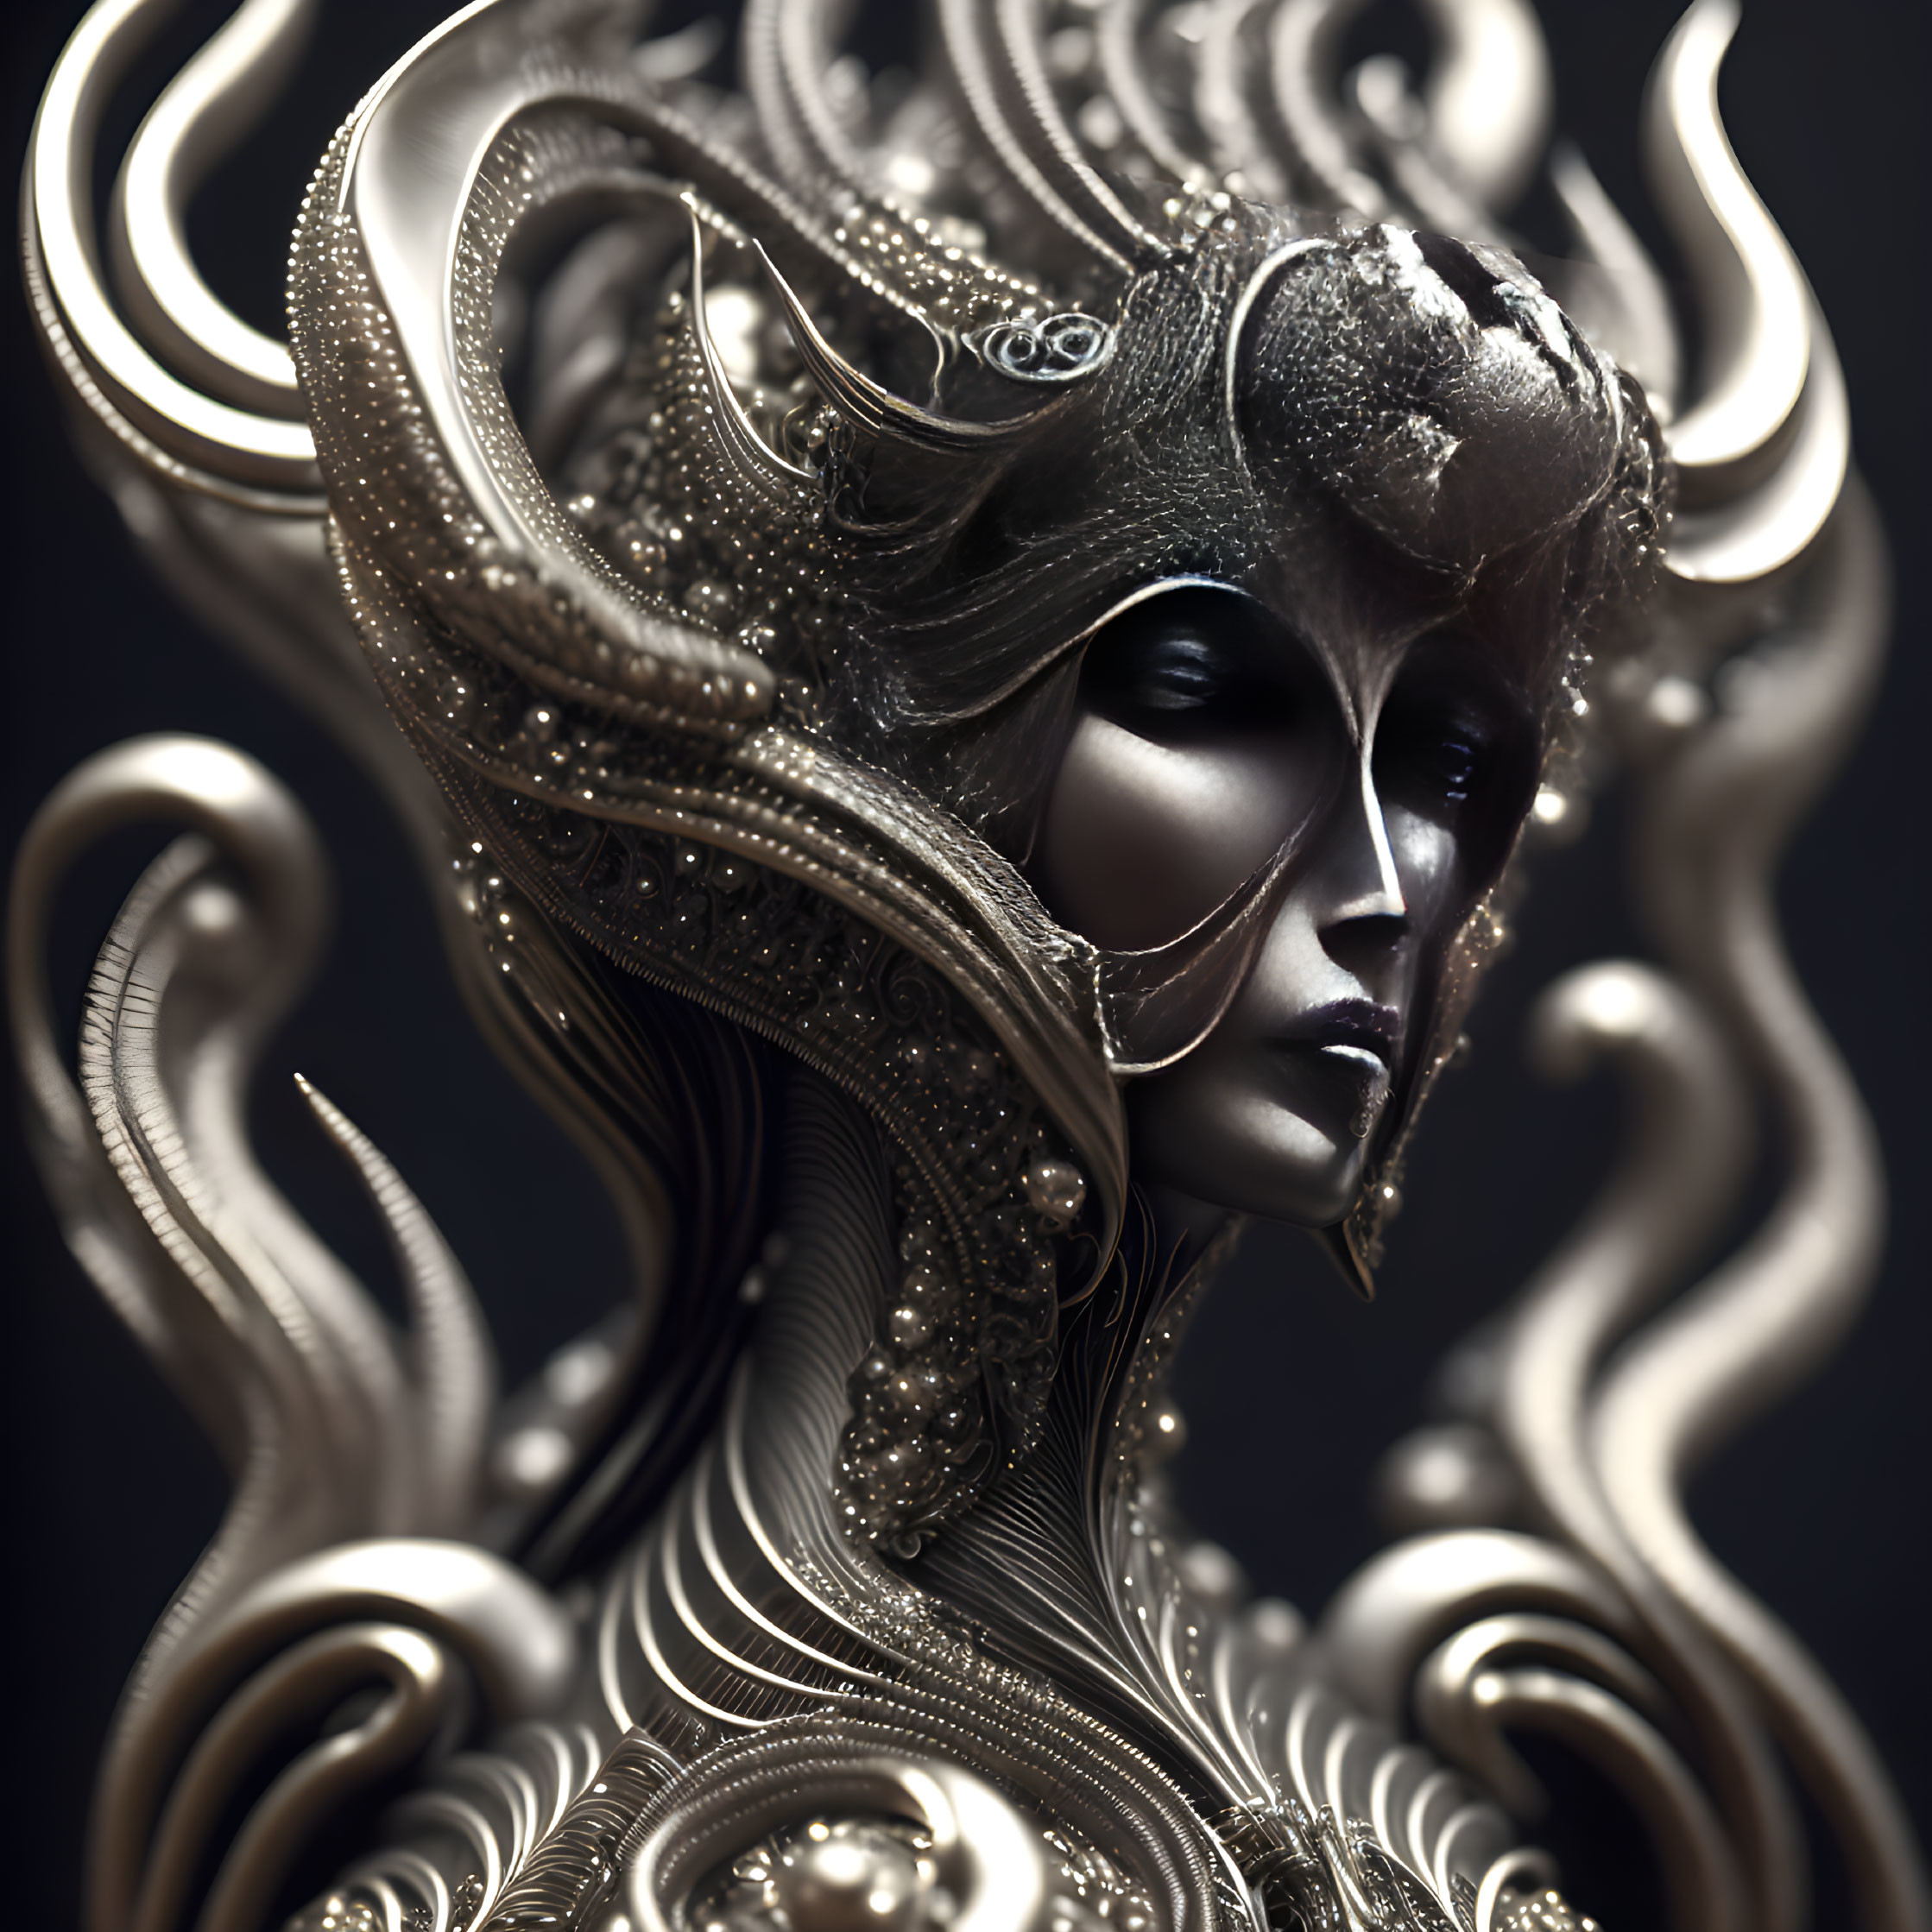 Detailed 3D illustration of female figure in ornate metallic armor on dark background